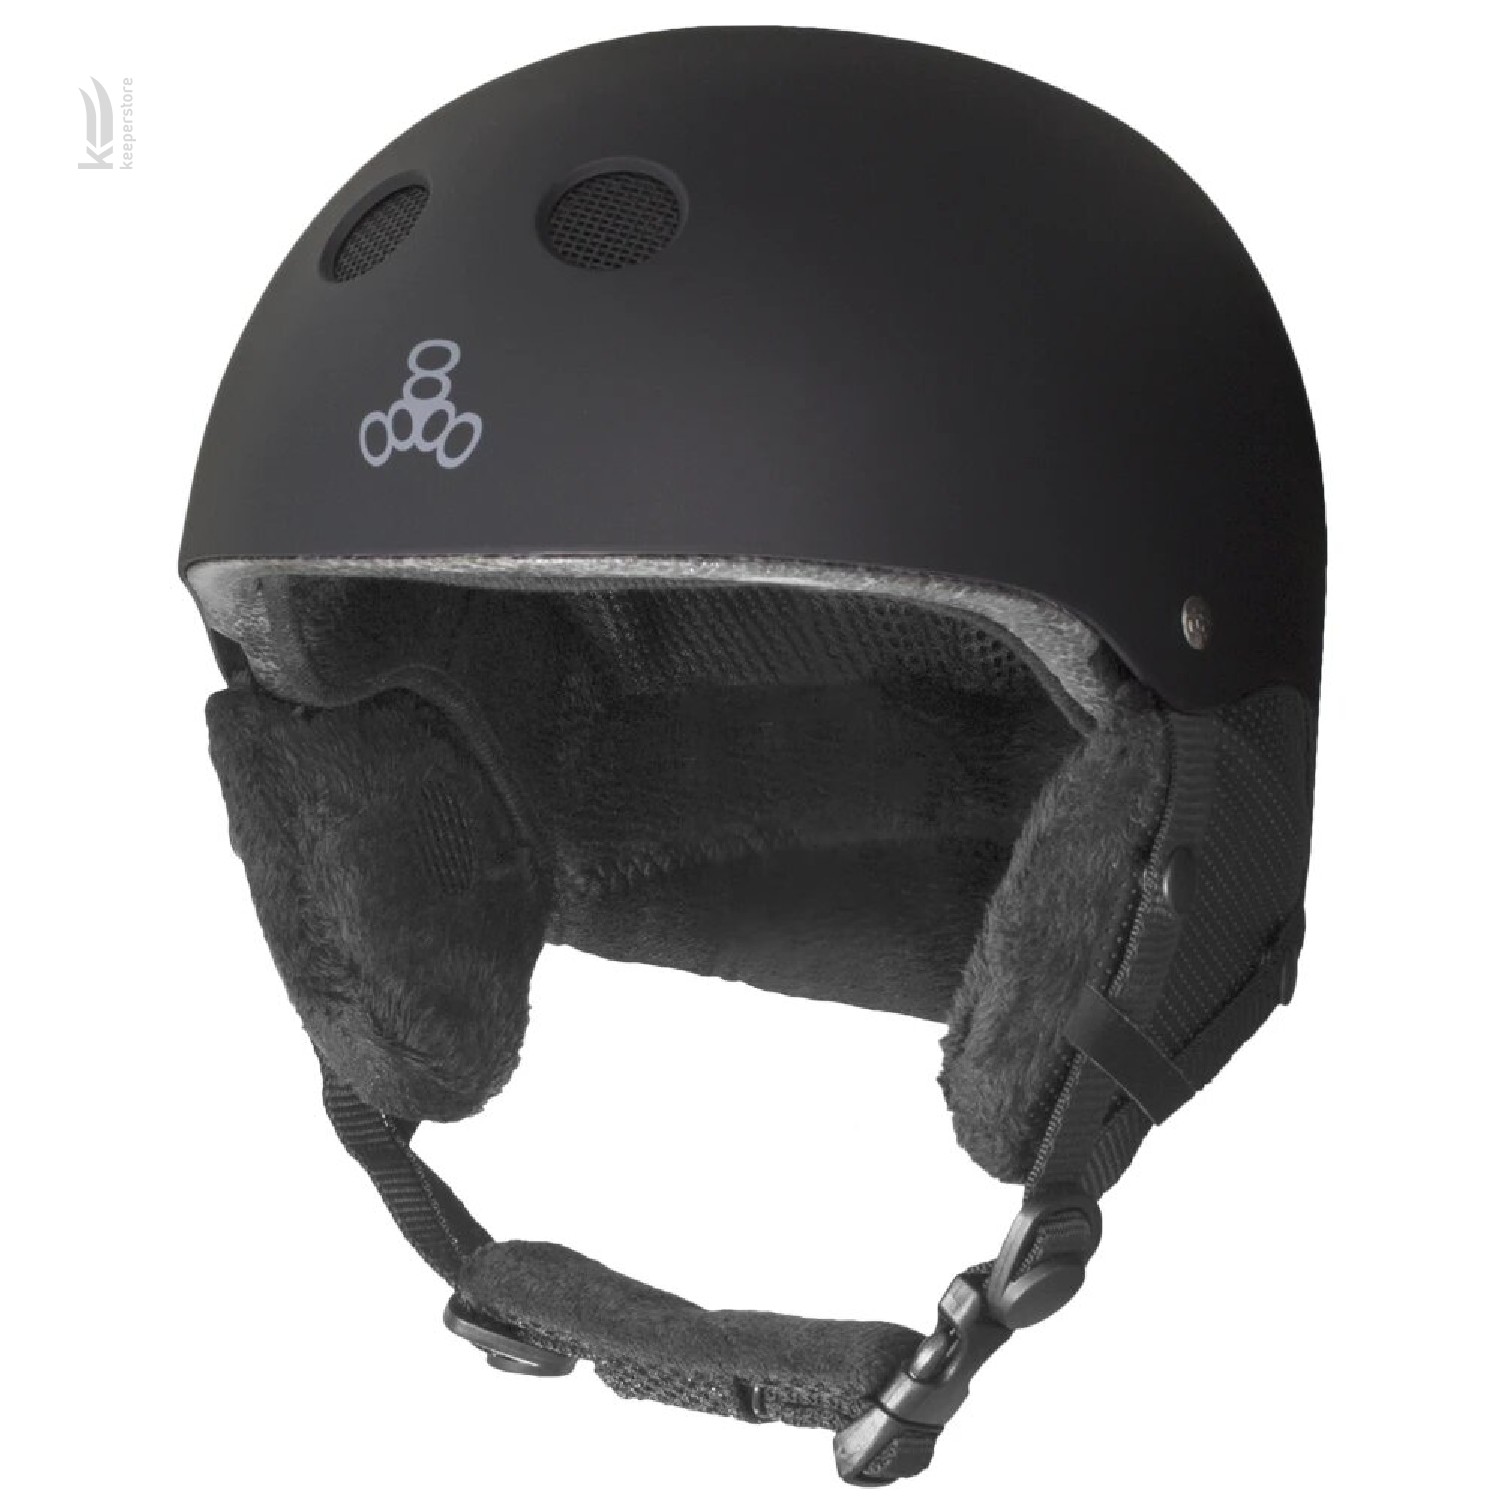 Купить шлем для сноубординга Triple8 Halo Snow Standart Black Rubber (S/M) в Киеве